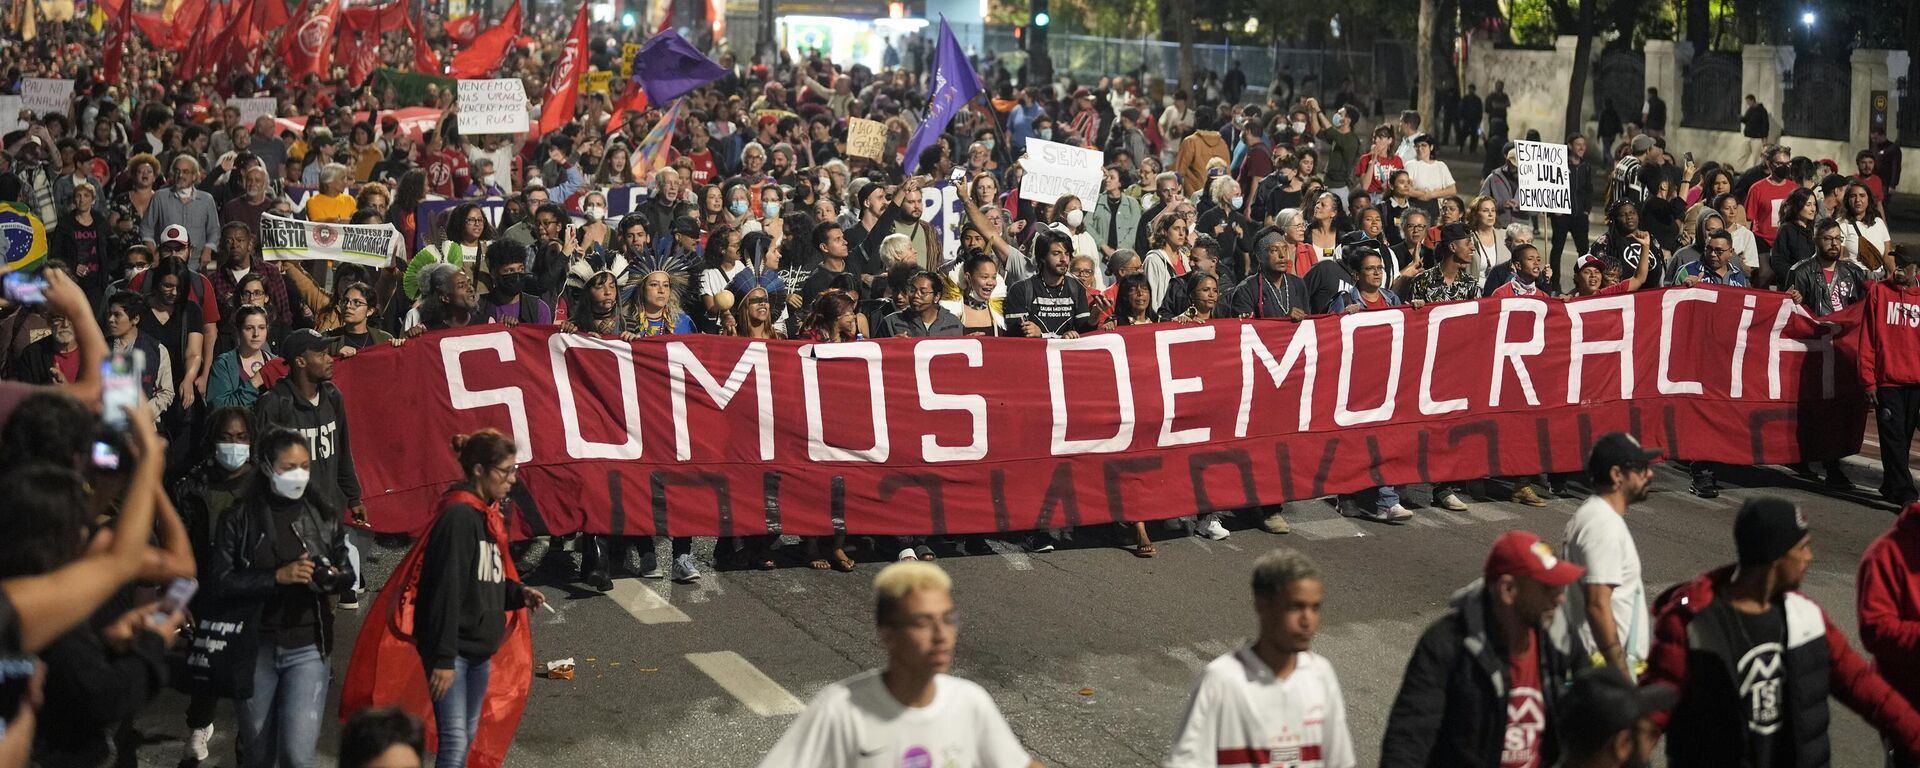 Brezilya'nın Sao Paulo şehrinde Portekizce Biz Demokrasiyiz yazılı pankart açarak yürüyen göstericiler, 8 Ocak 2023'te devlet başkanlığı, Kongre ve Yüksek Mahkeme'yi basarak darbe girişiminde bulunan önceki Devlet Başkanı Jair Bolsonaro'nun taraftarlarının yargılanıp hapse atılmasını ve demokrasinin korunmasını talep etti.  - Sputnik Türkiye, 1920, 10.01.2023